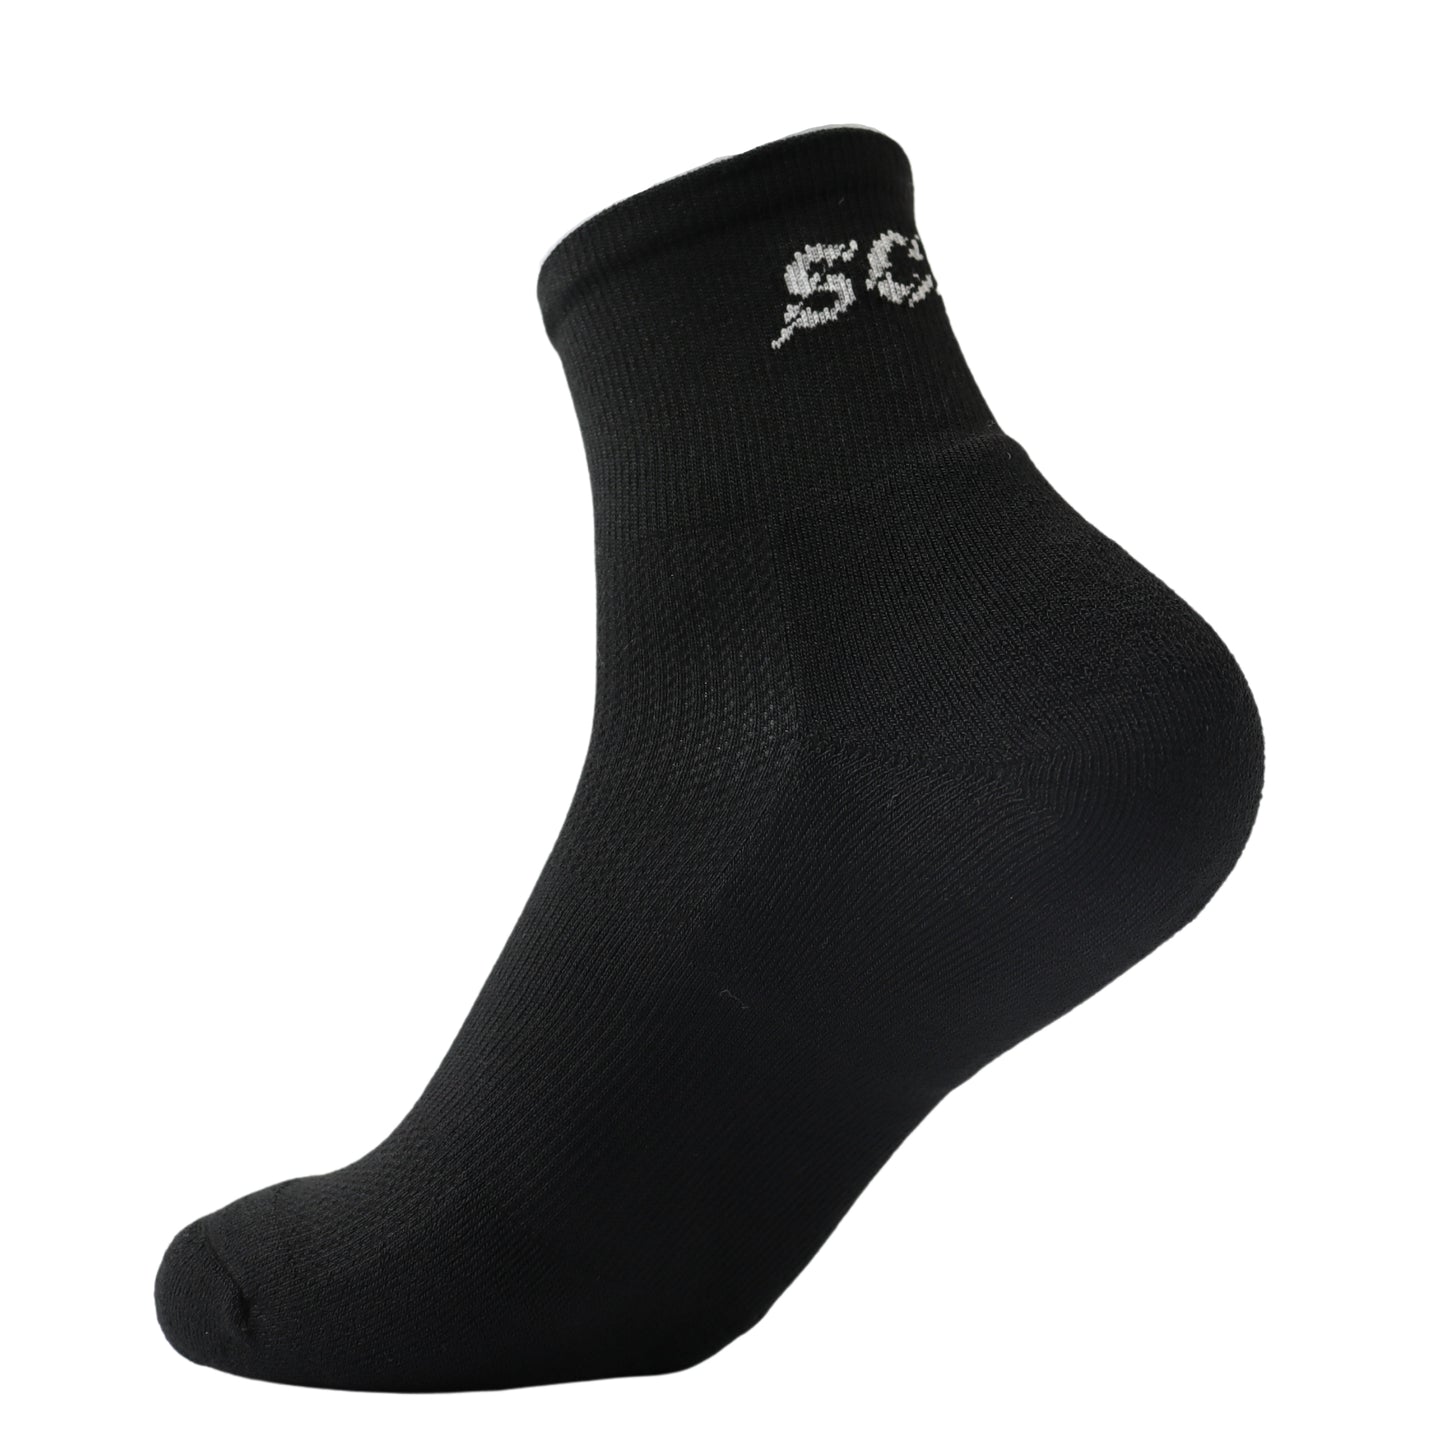 Women's Black quarter sport socks